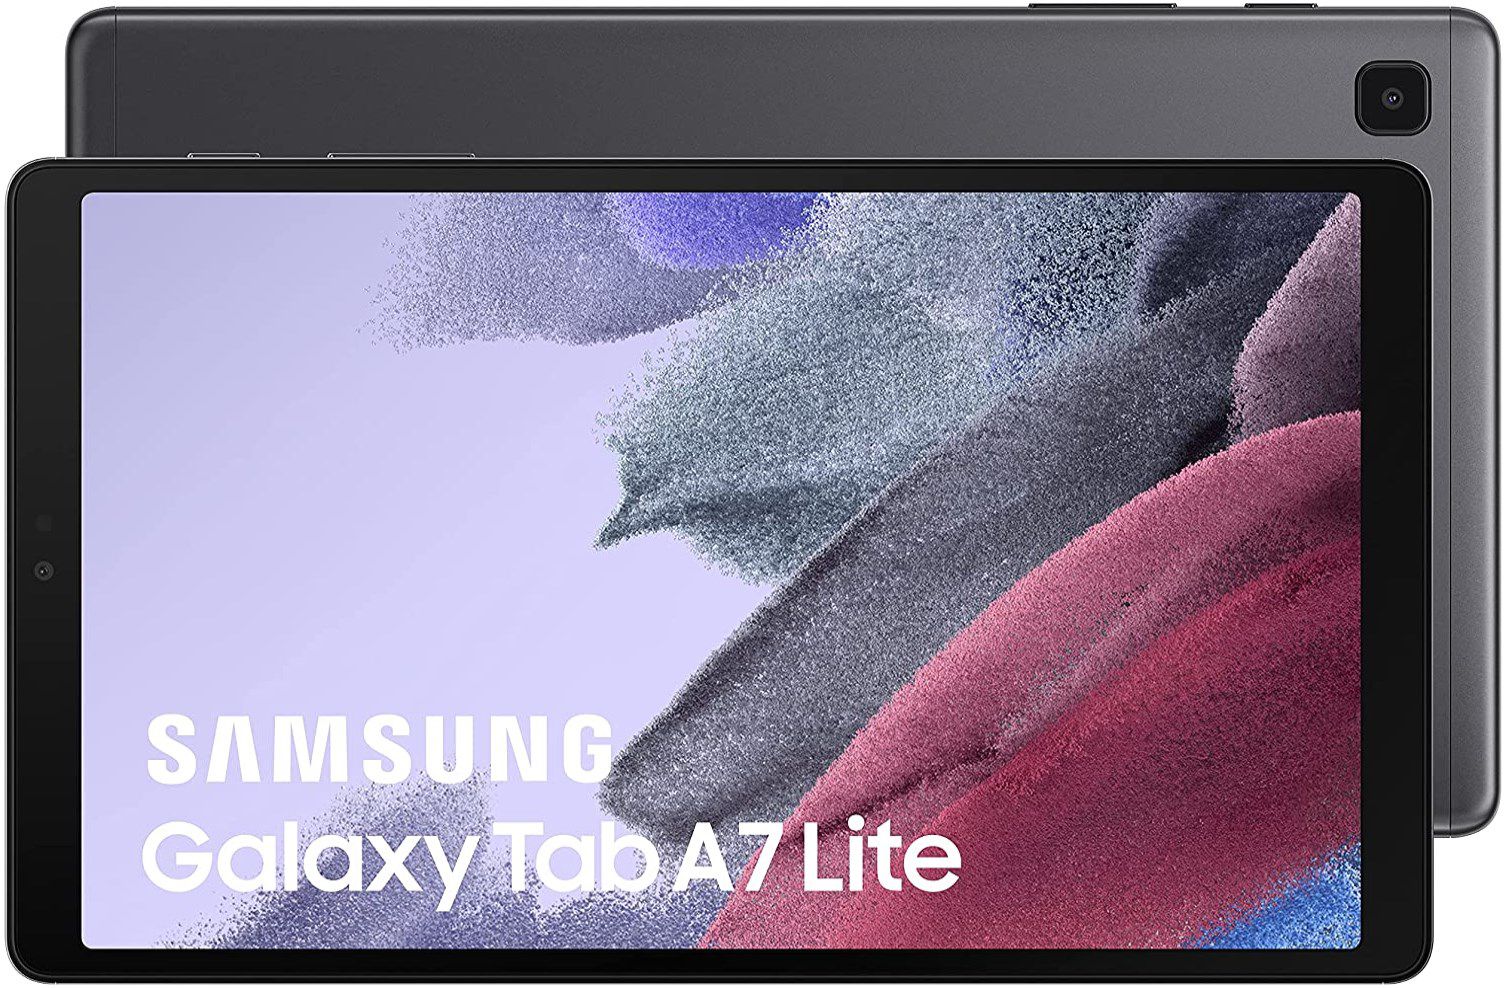 Samsung Galaxy Tab A7 Lite mit 32GB, Wi Fi für 99€ (statt 130€)